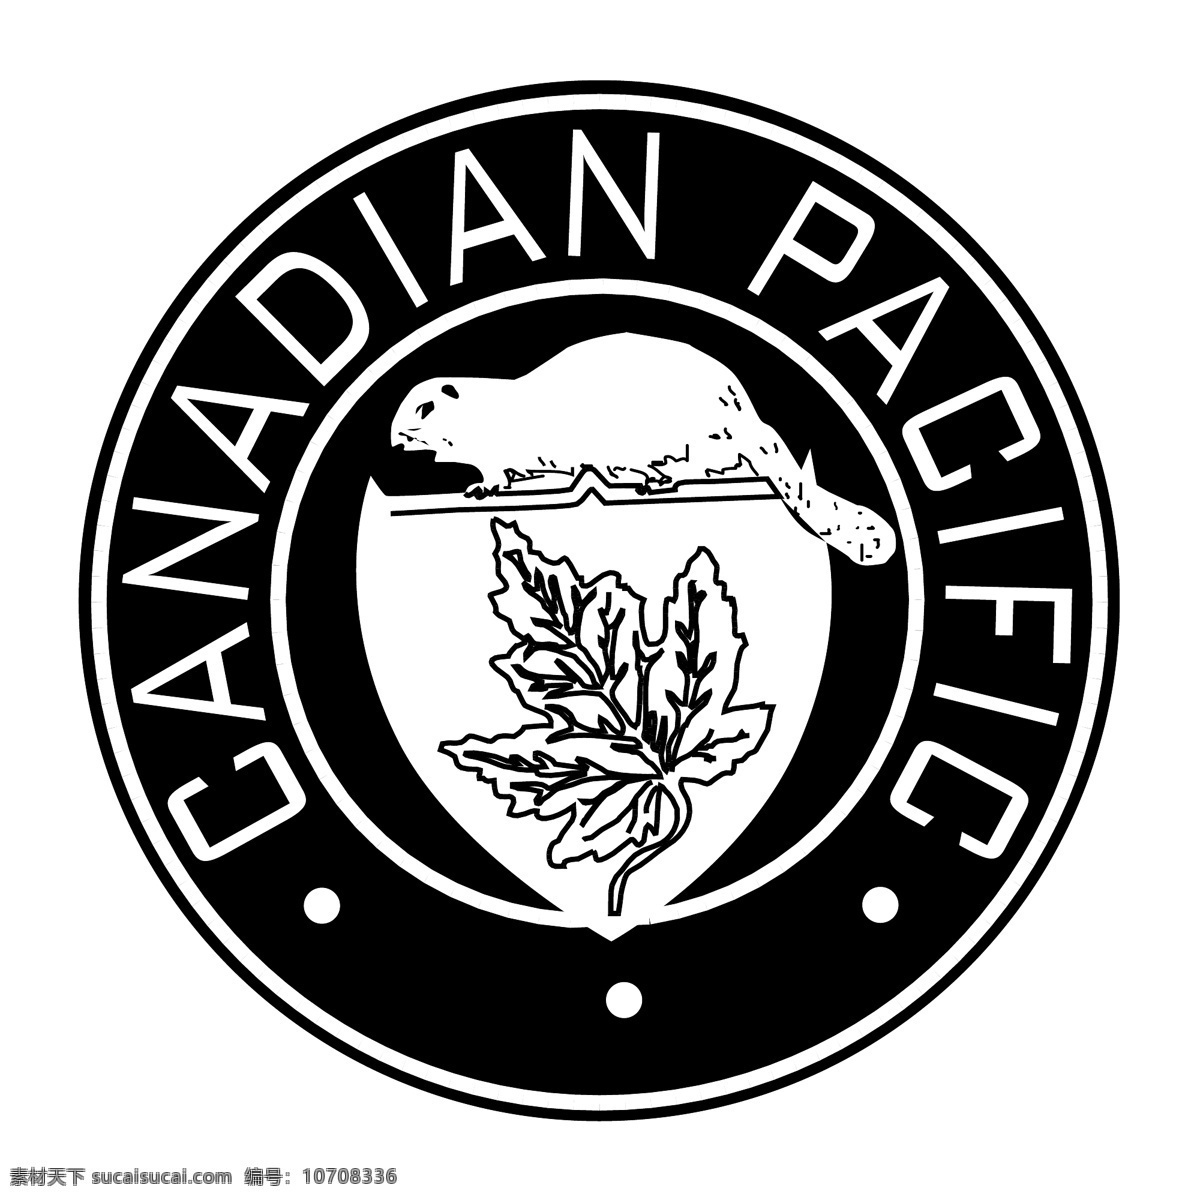 加拿大 太平洋铁路 太平洋 铁路 加拿大人 矢量图 其他矢量图